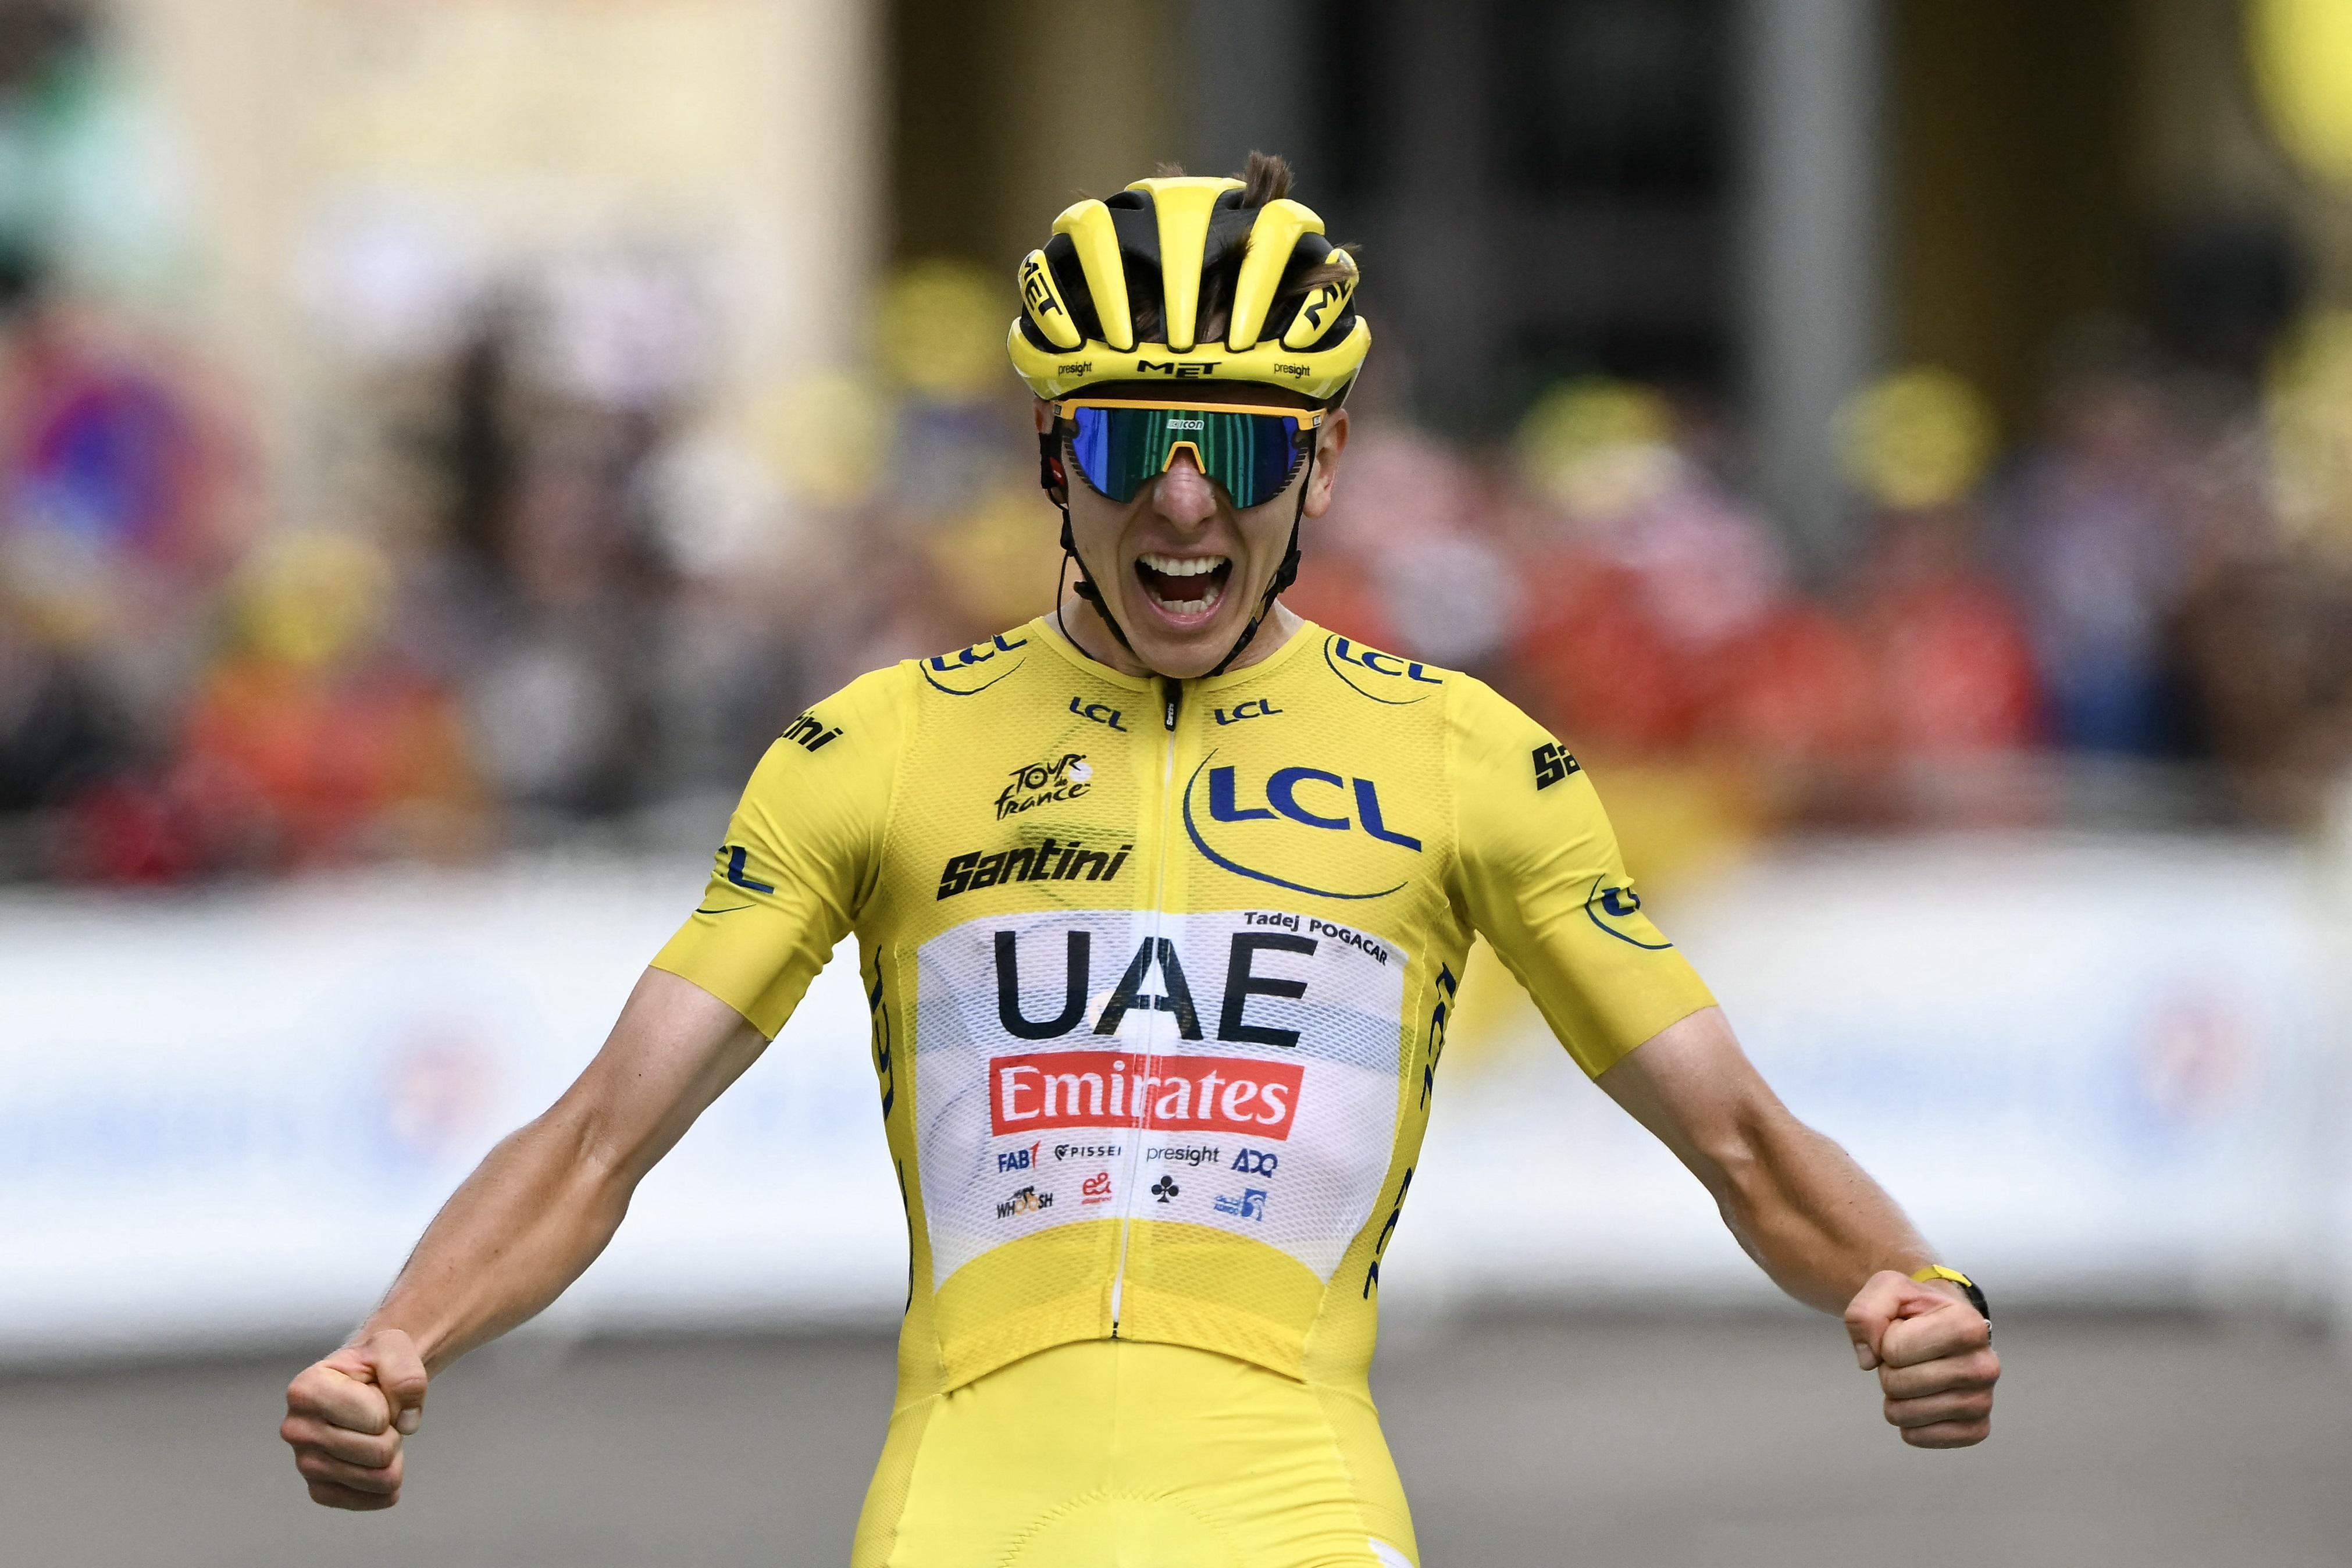 Tour de France - Pogacar beffa Vingegaard sul finale della 20esima tappa: quinta vittoria